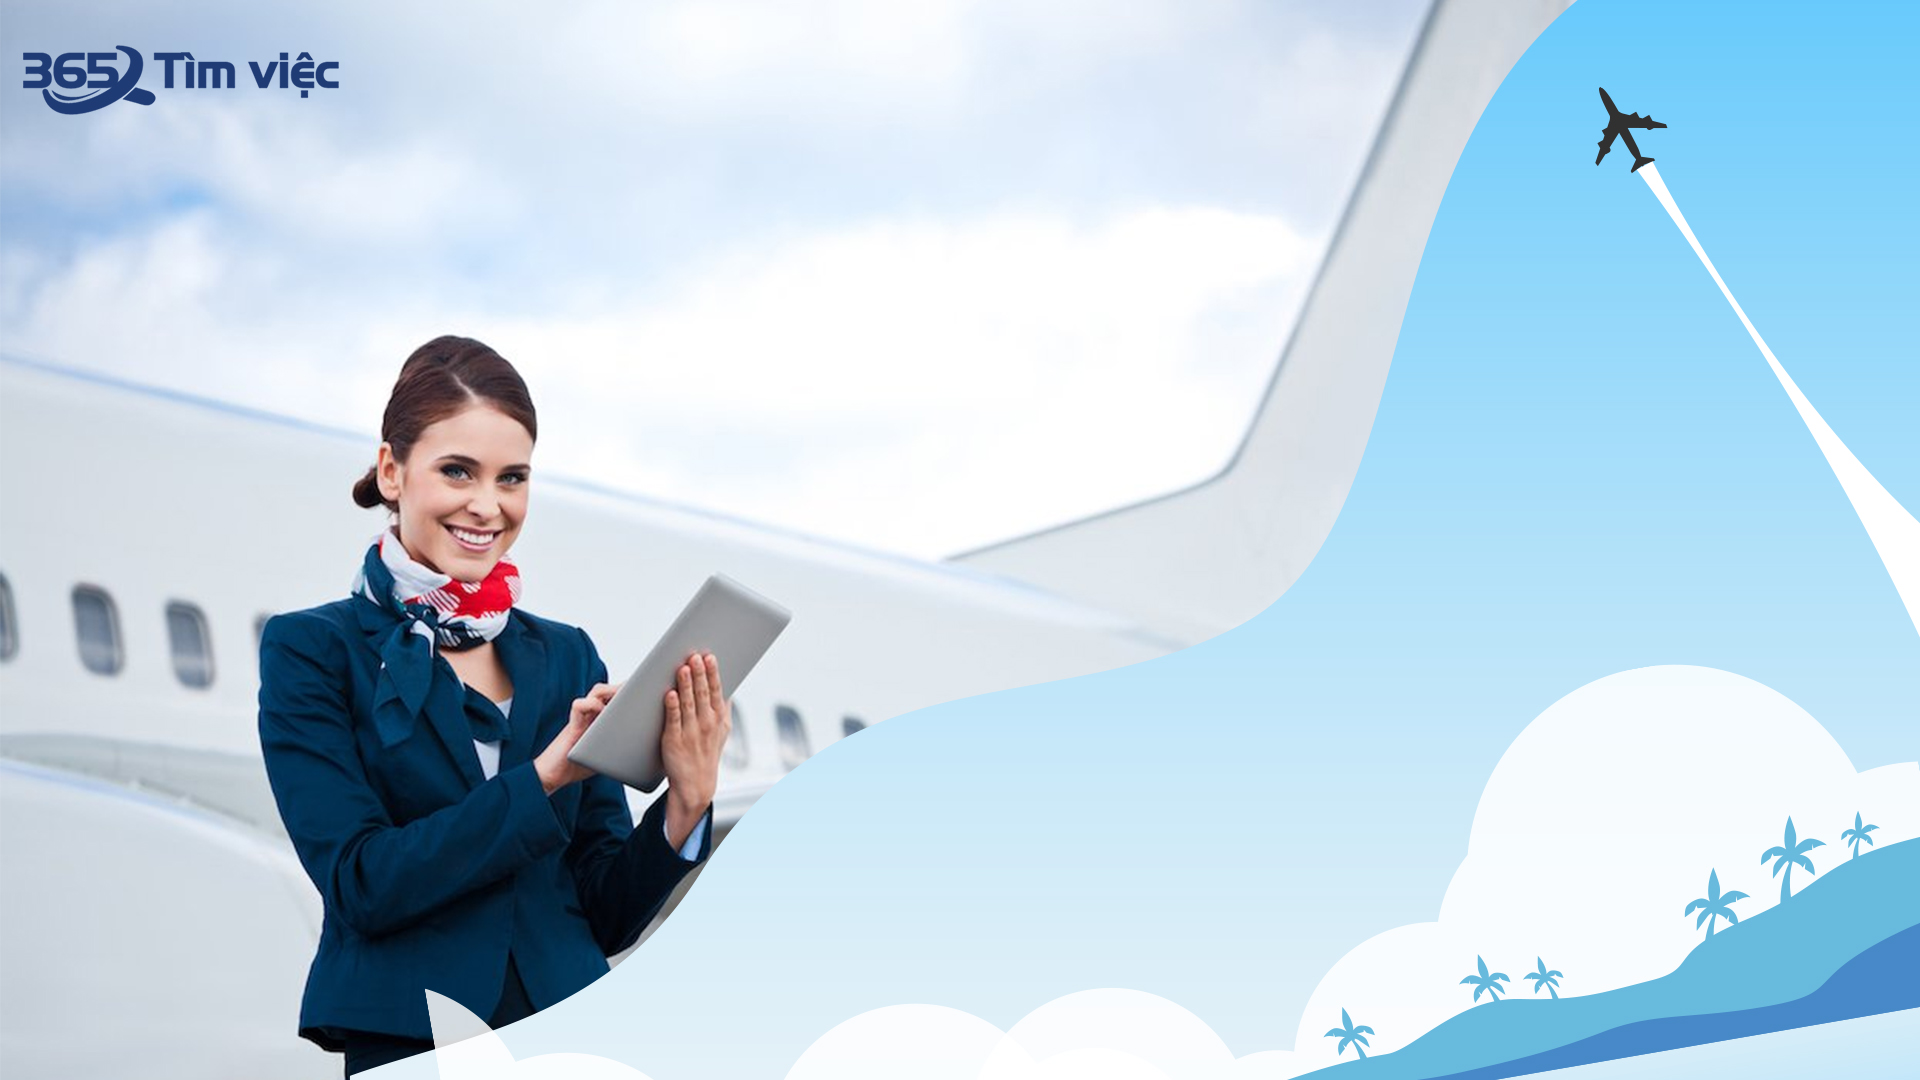 Tuổi nghề của tiếp viên hàng không theo thông lệ renew